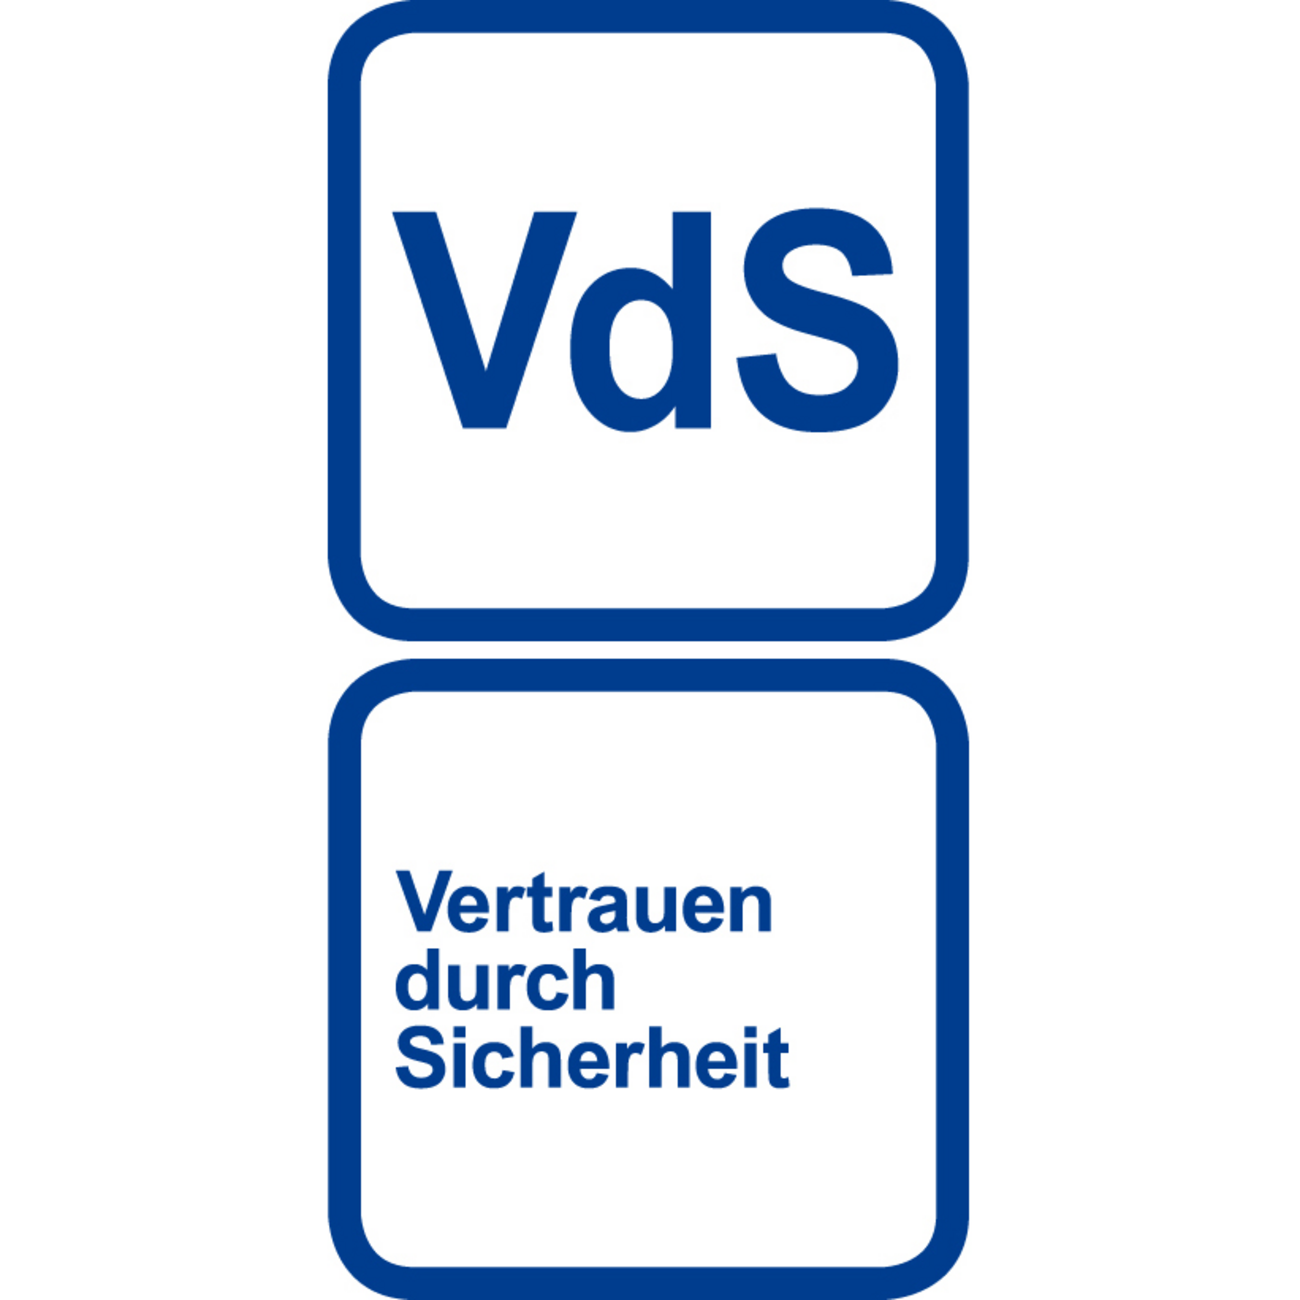 Vertrauen durch Sicherheit bei DS Haustechnik GmbH in Wiesbaden